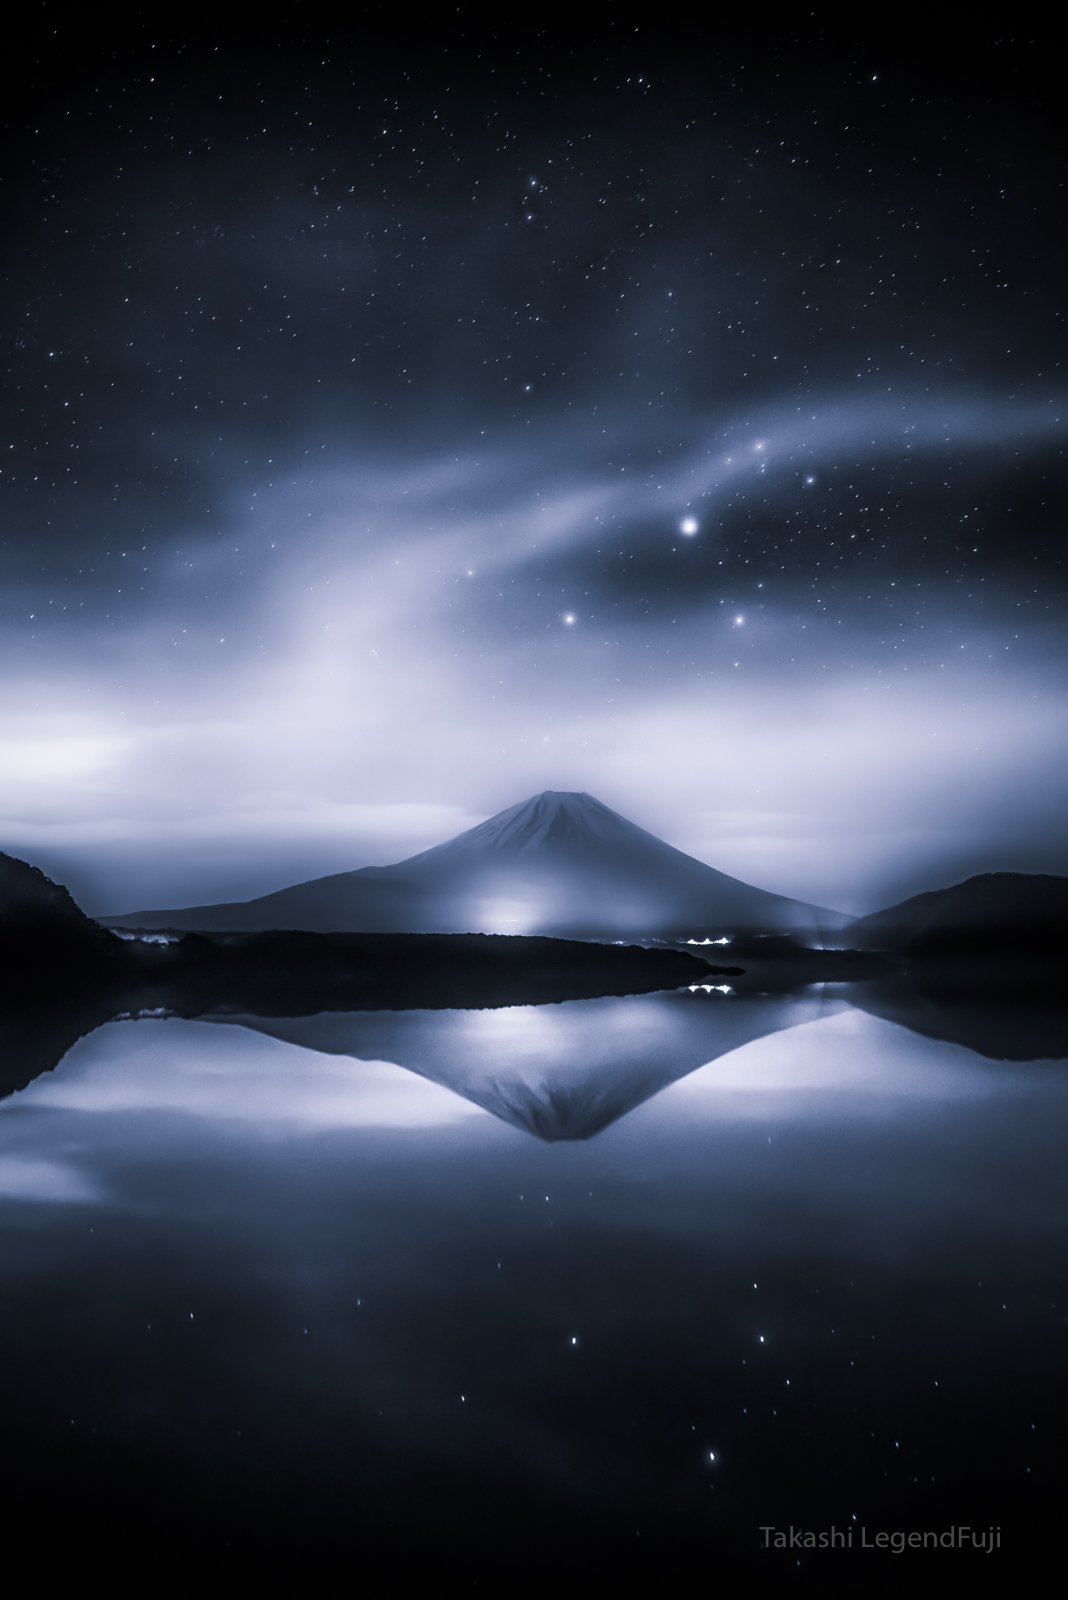 Fuji,mountain,water,lake,cloud,star,night,Japan,landscape,beautiful,amazing,reflection, Takashi